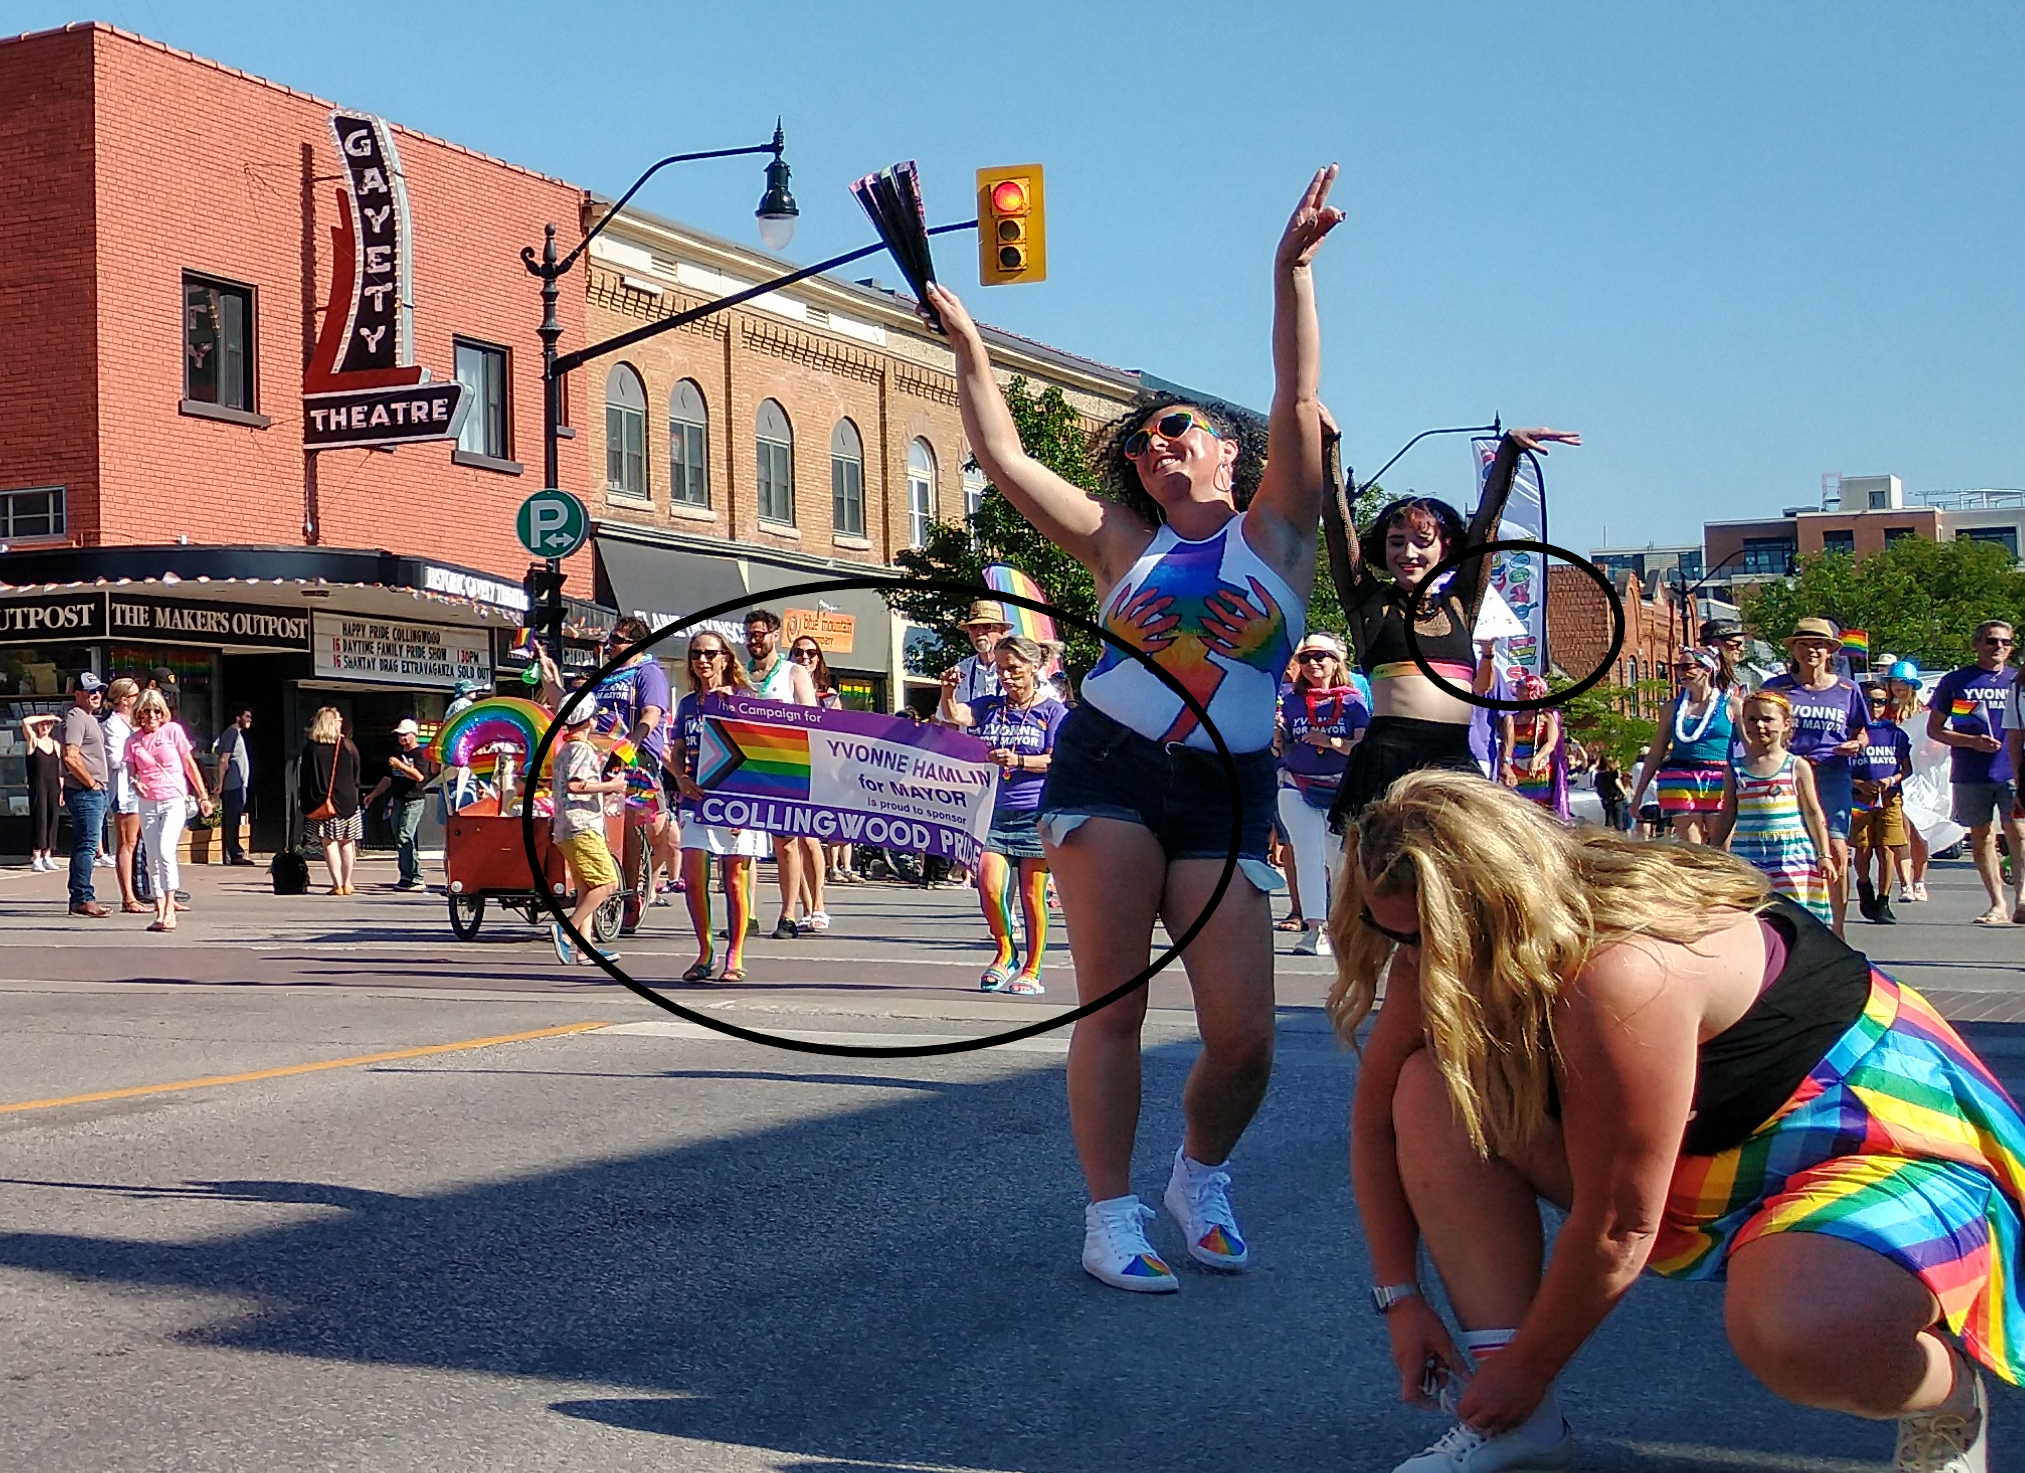 Hamlin's election signs in the Pride Parade